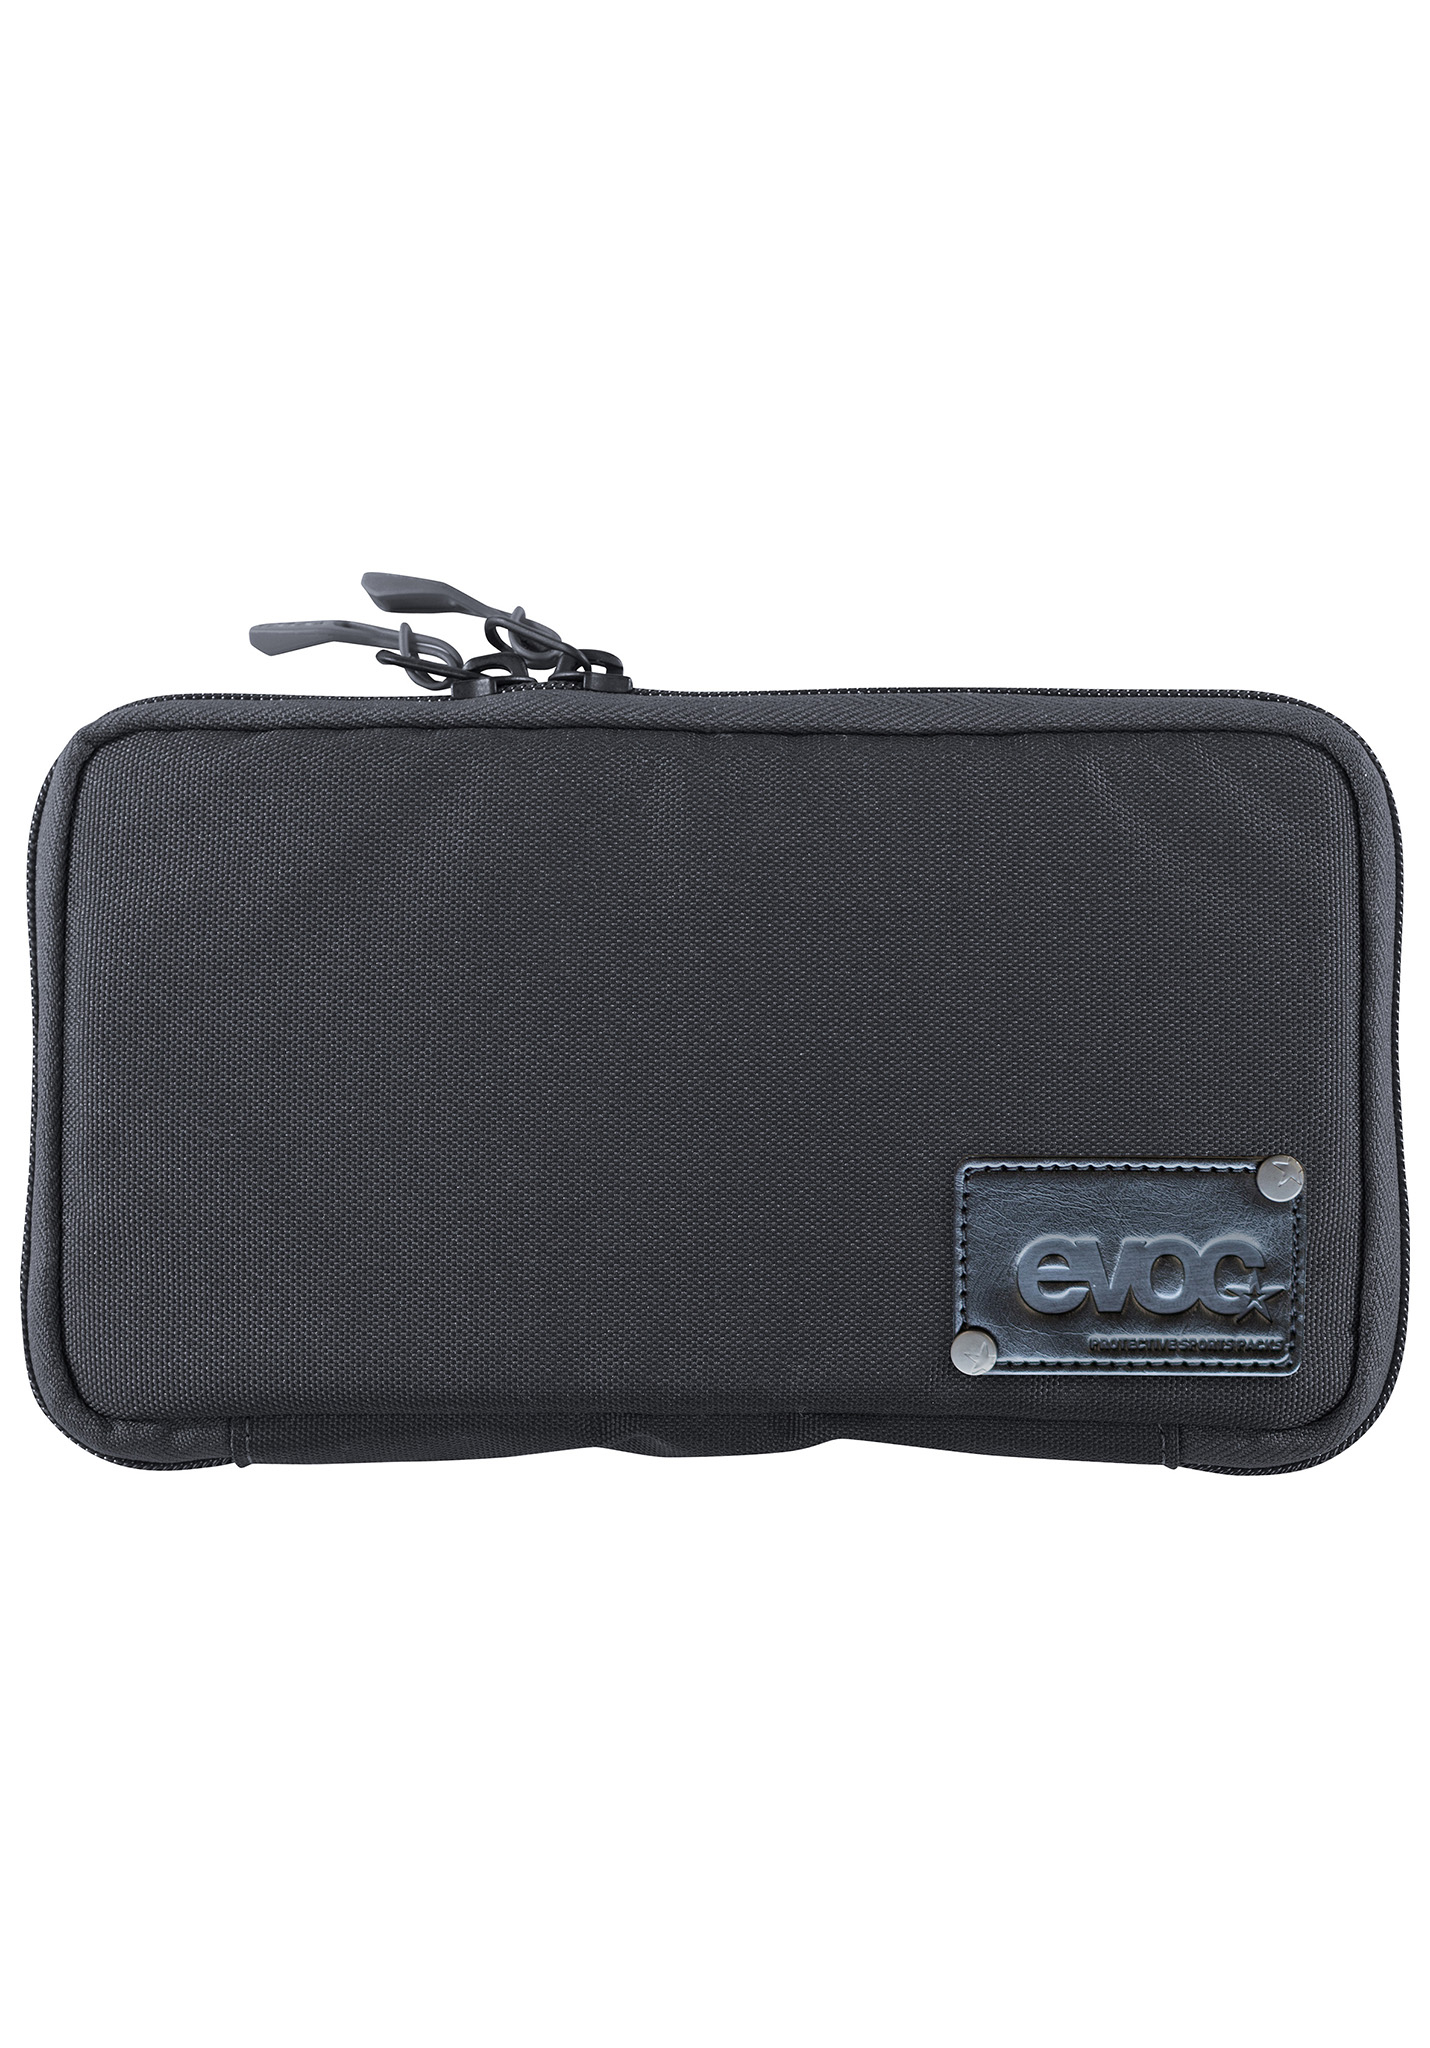 Evoc Travel Case Taschen black One Size